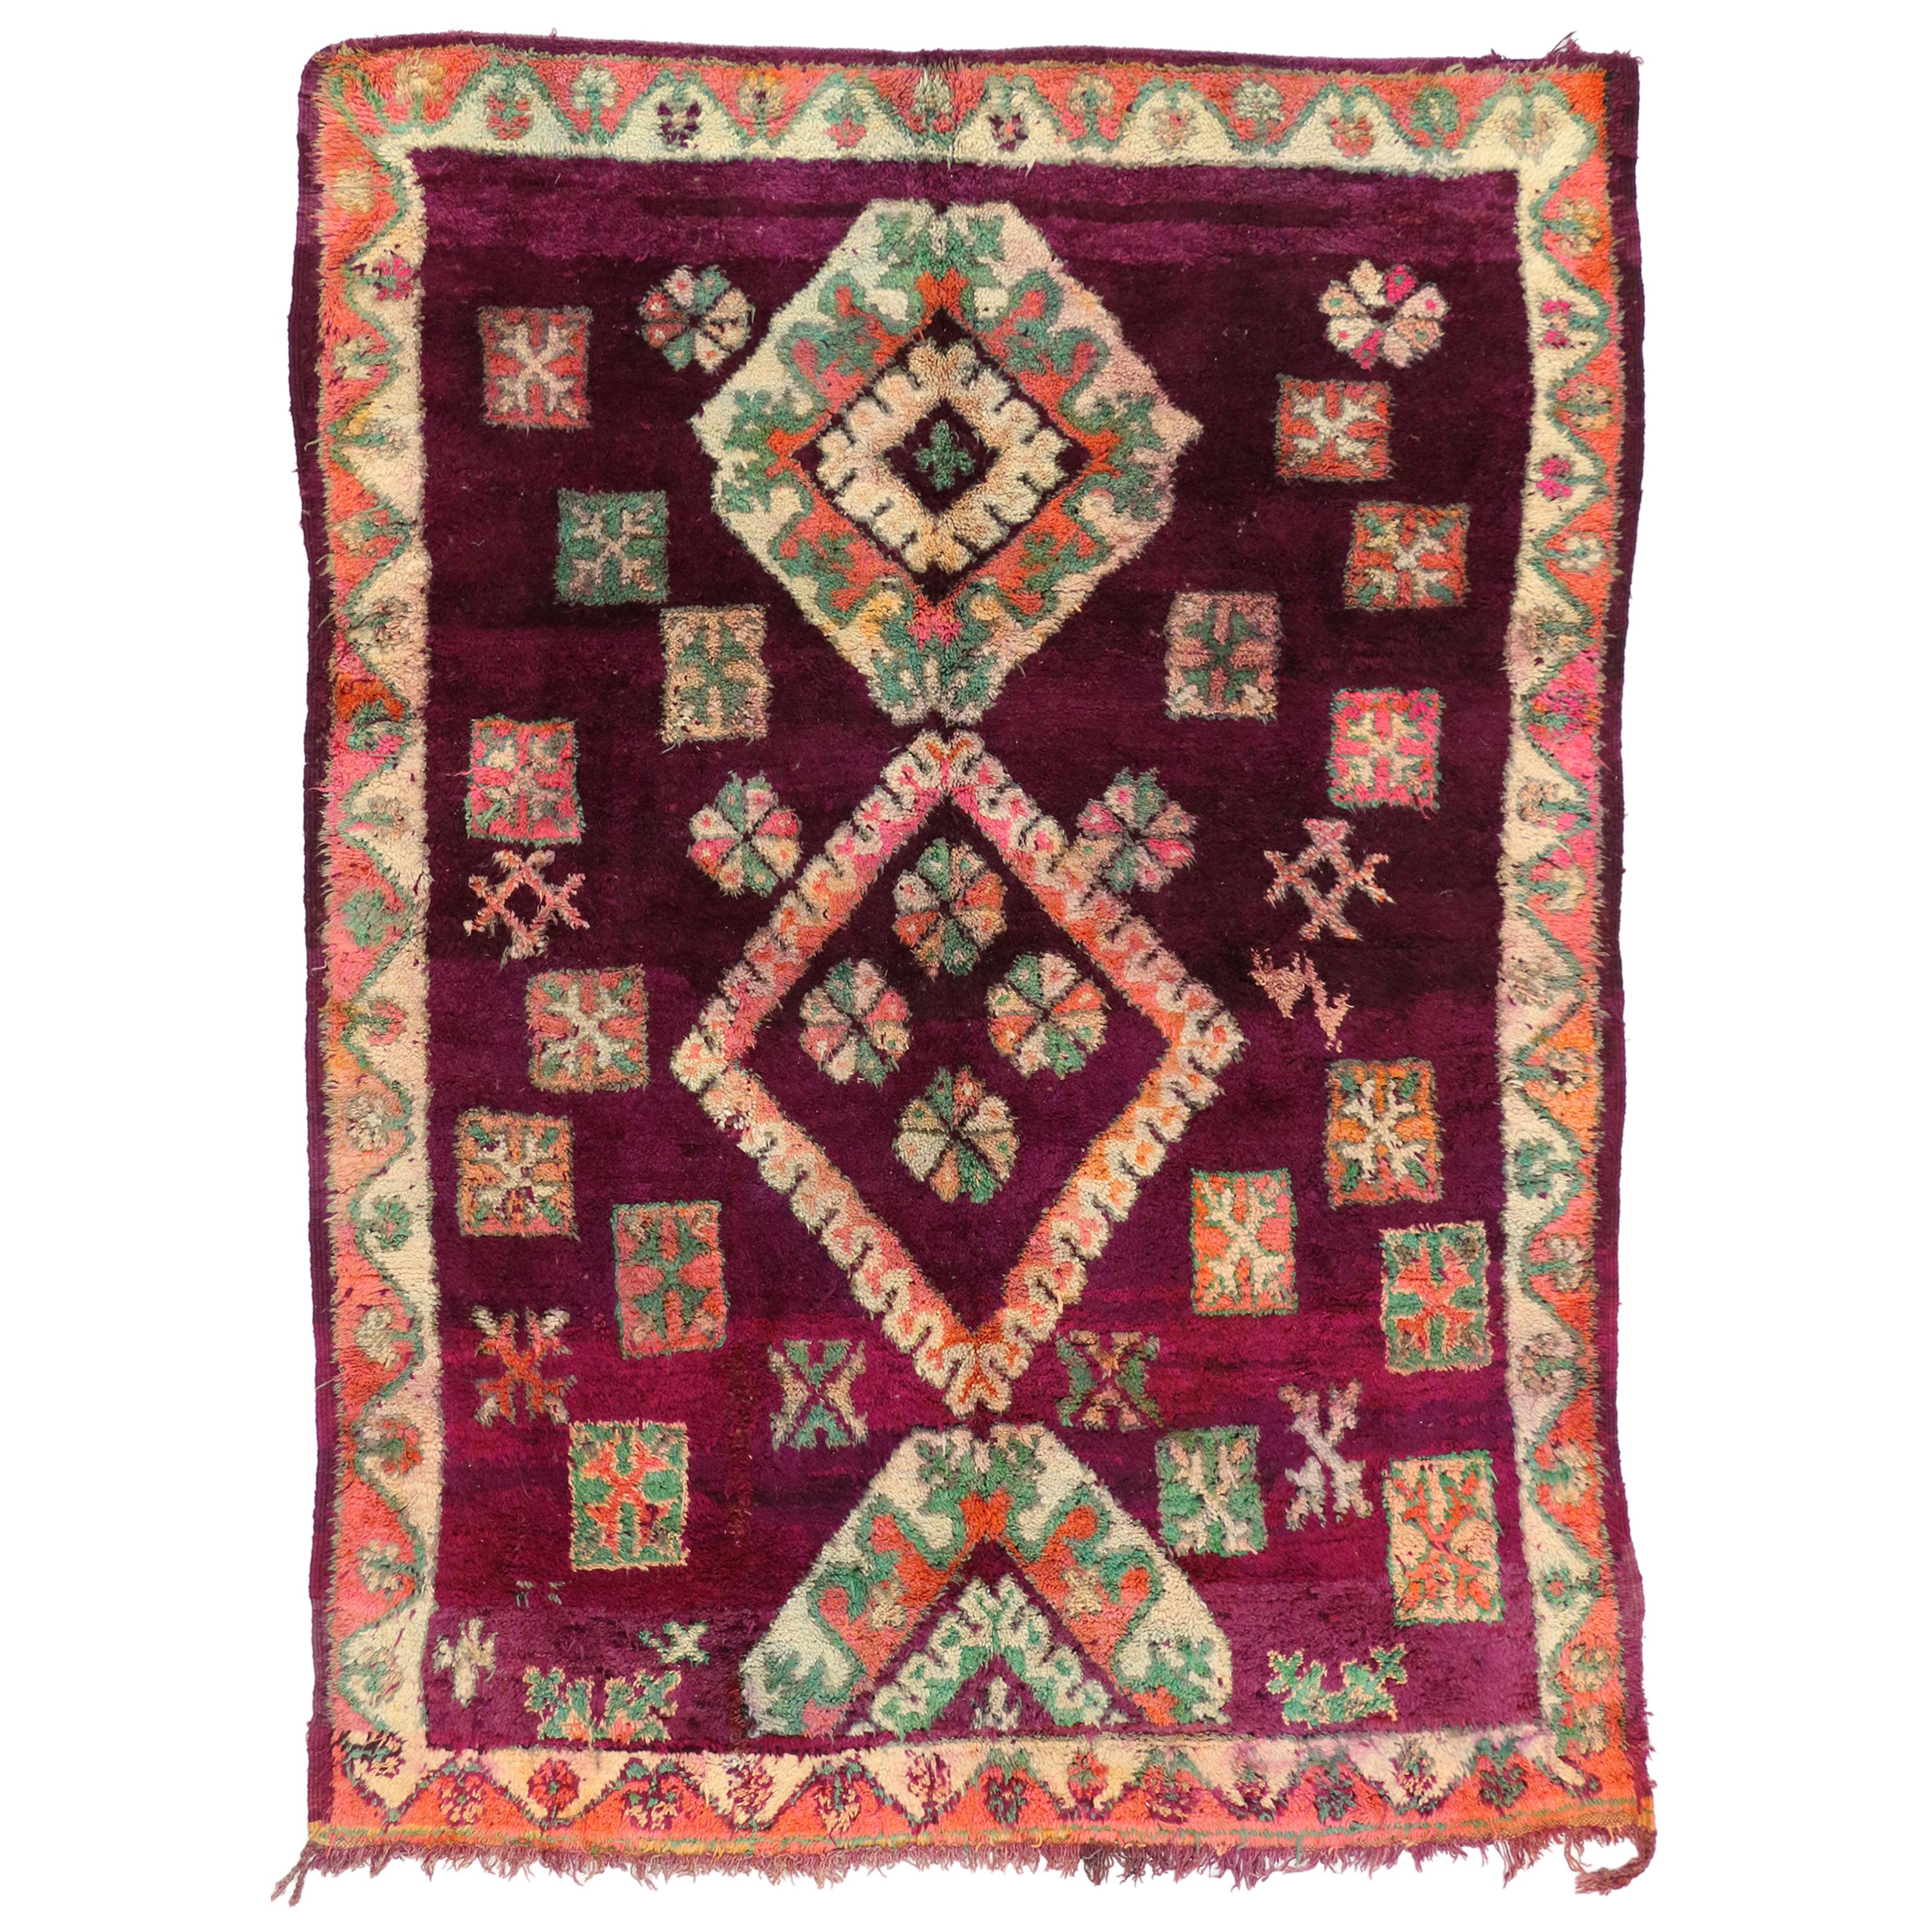 Marokkanischer Boujad-Teppich im Stammesstil, farbenfroher marokkanischer Berberteppich